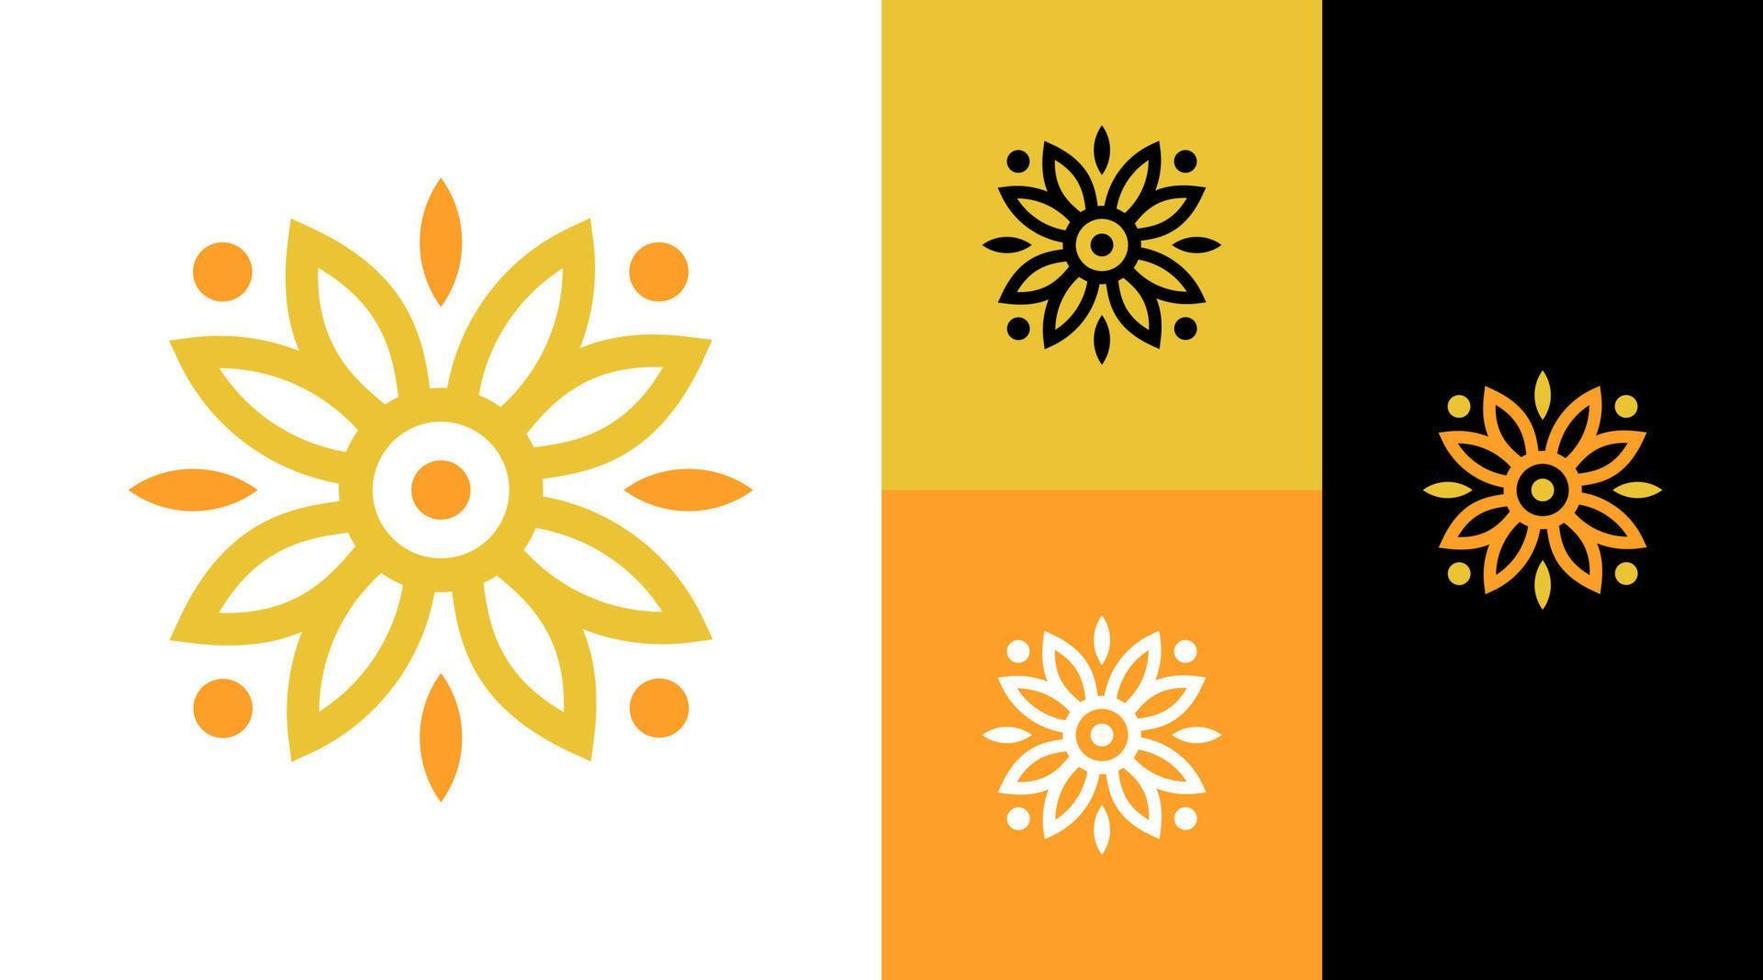 ornement de fleur de soleil création de logo de marque naturelle vecteur